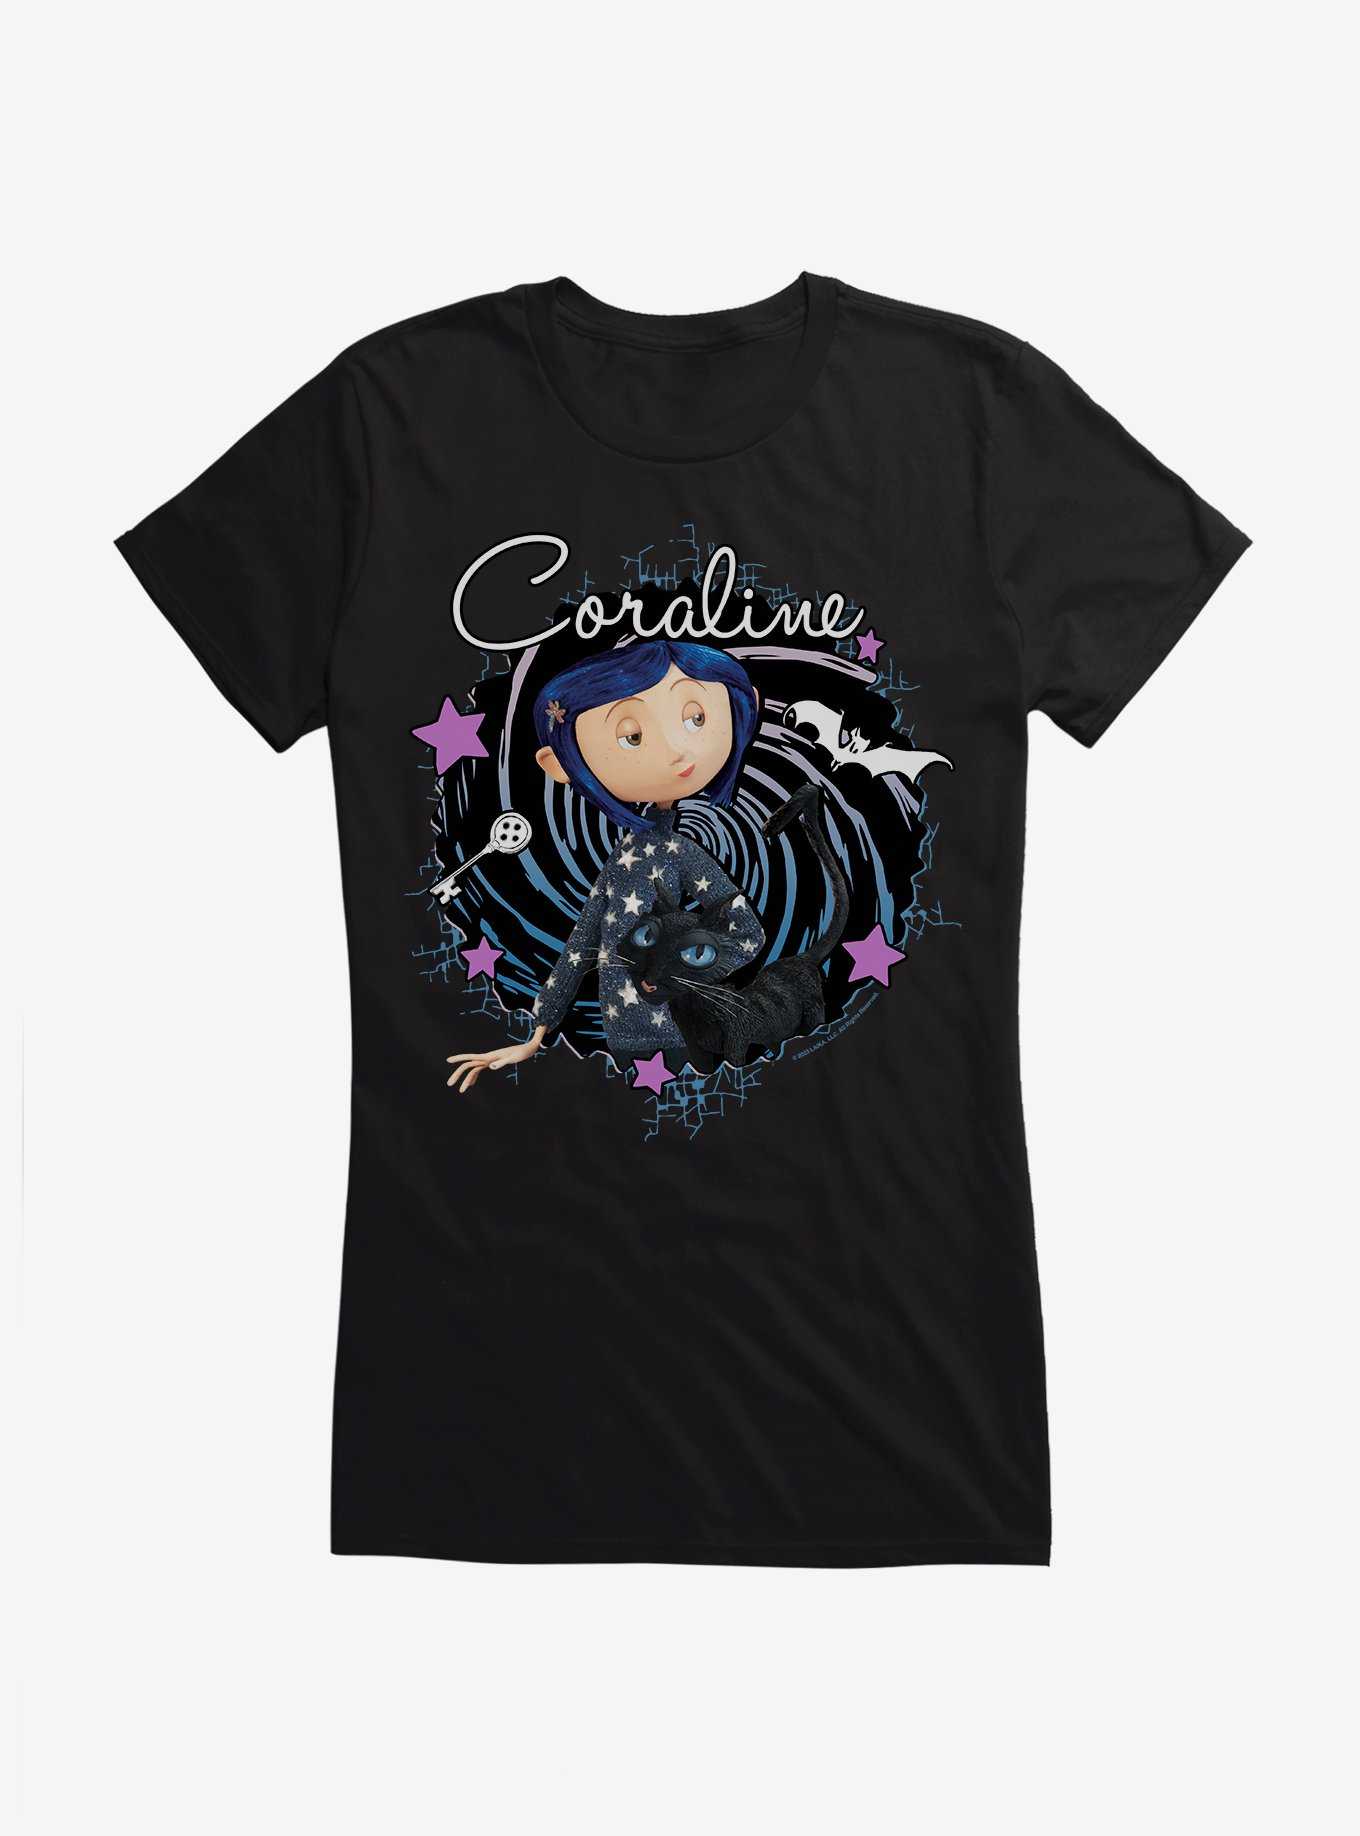 Coraline The Cat Swirl And Stars Girls T-Shirt, , hi-res